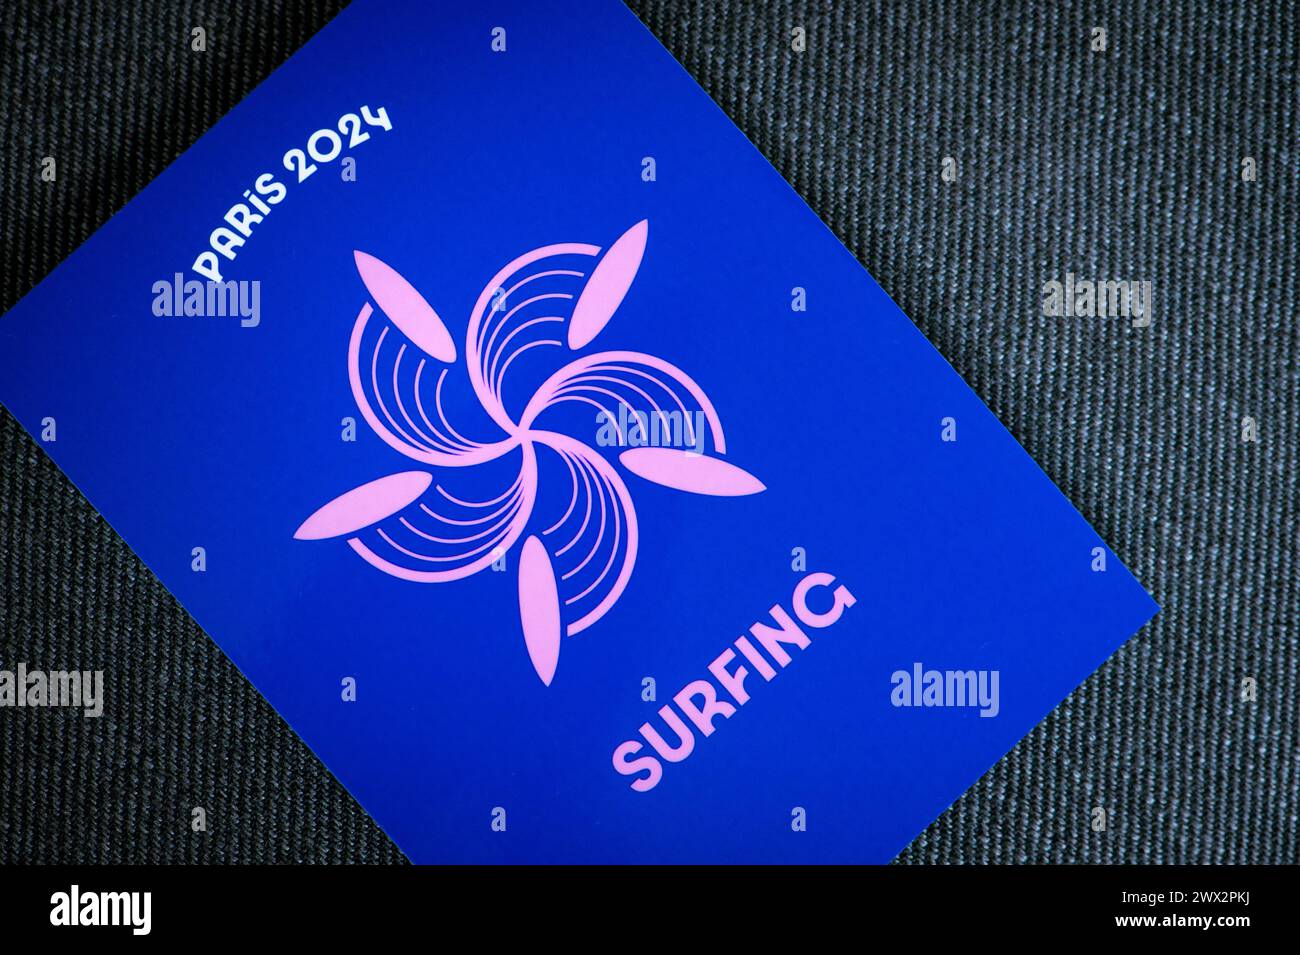 Surfpiktogramm für die olympischen sommerspiele 2024 in paris. Offizielle Ikone des Sports beim olympischen Spiel in Paris 24 Stockfoto